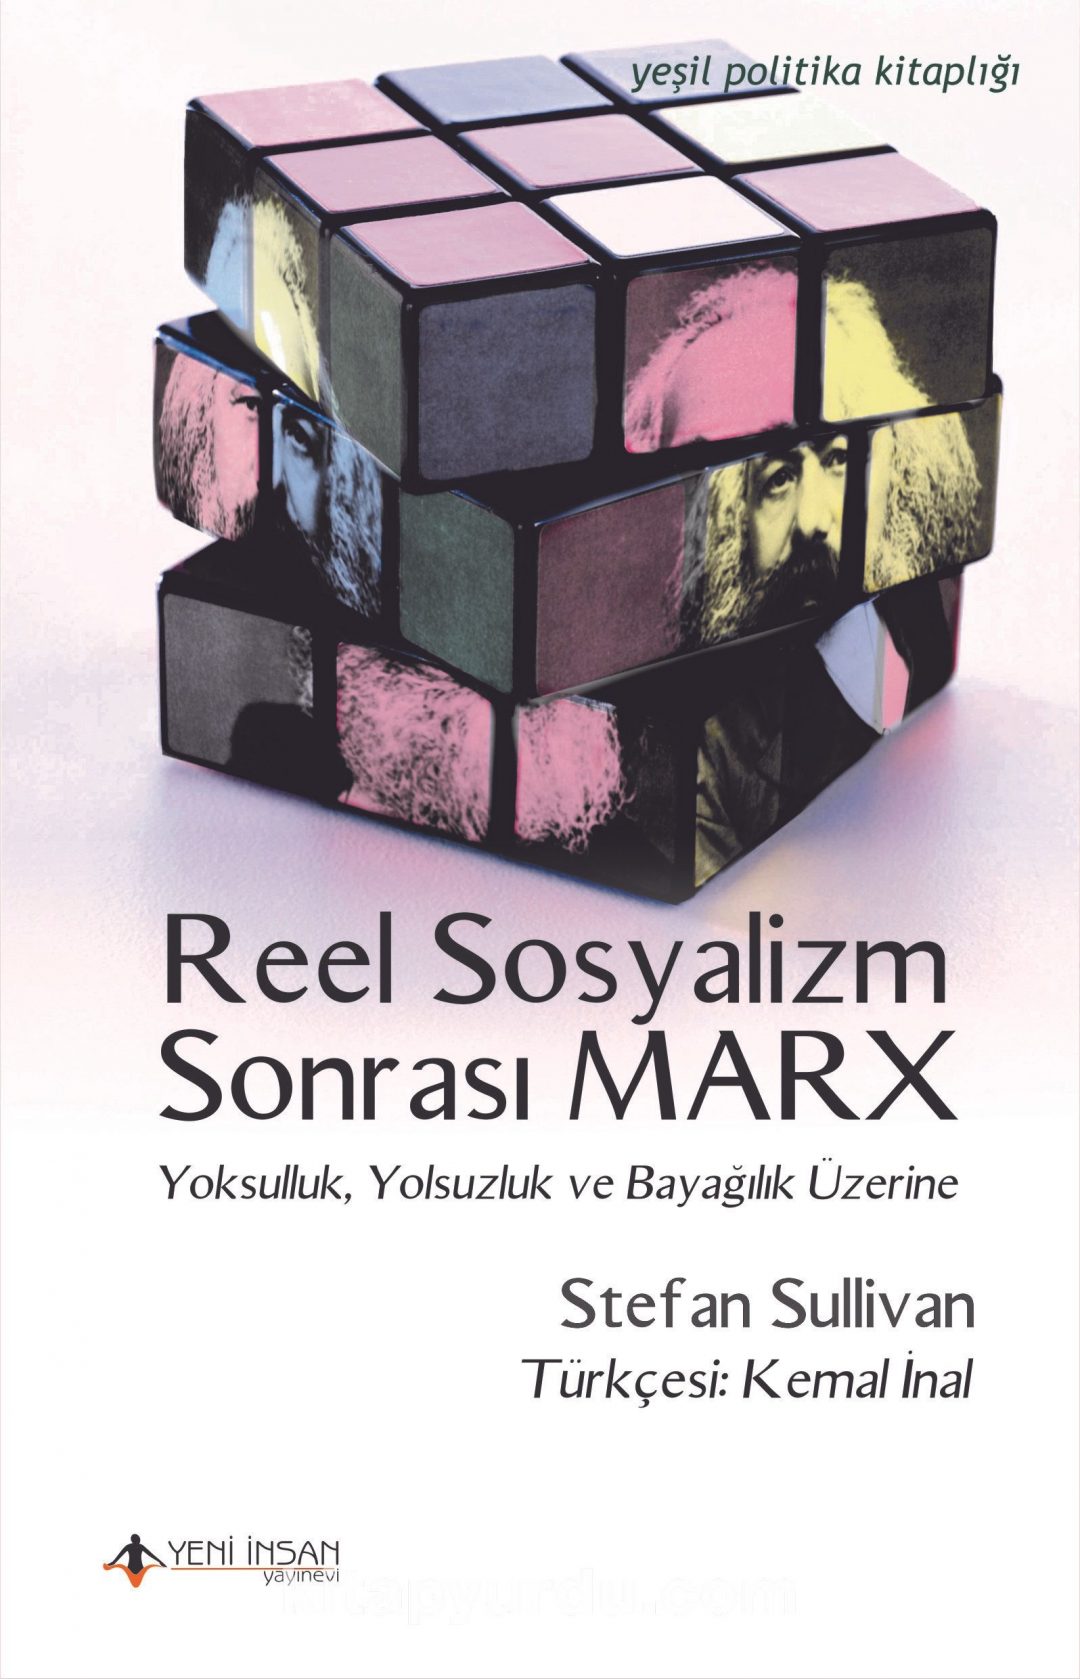 Reel Sosyalizm Sonrası Marx & Yoksulluk, Yolsuzluk ve Bayağılık Üzerine